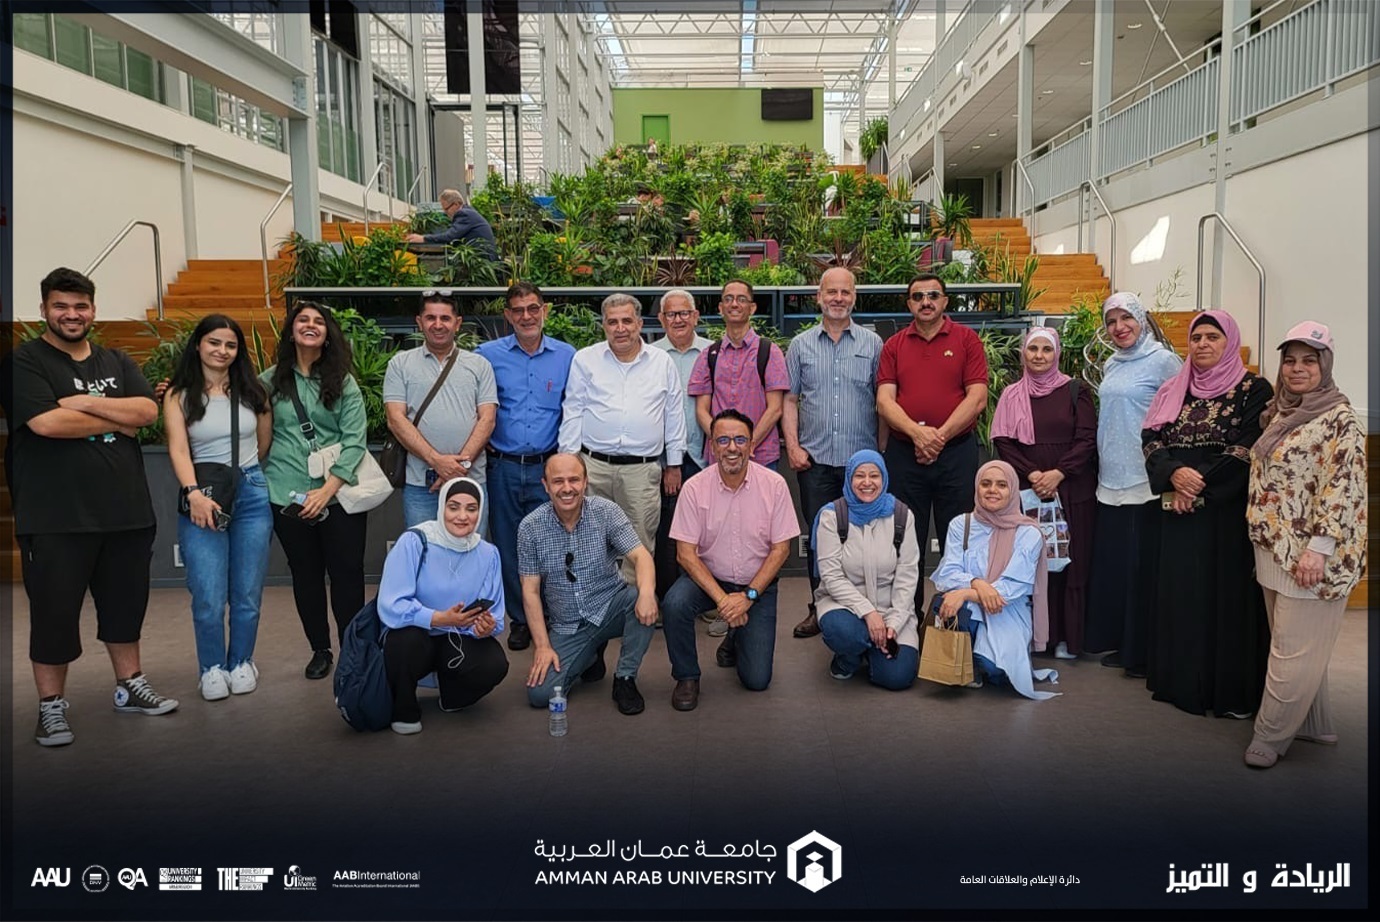 أعمال "عمان العربية" تشارك في زيارة عمل لمملكة هولندا للاطلاع على تجارب ادارية وتكنولوجية وتعاونية ناجحة